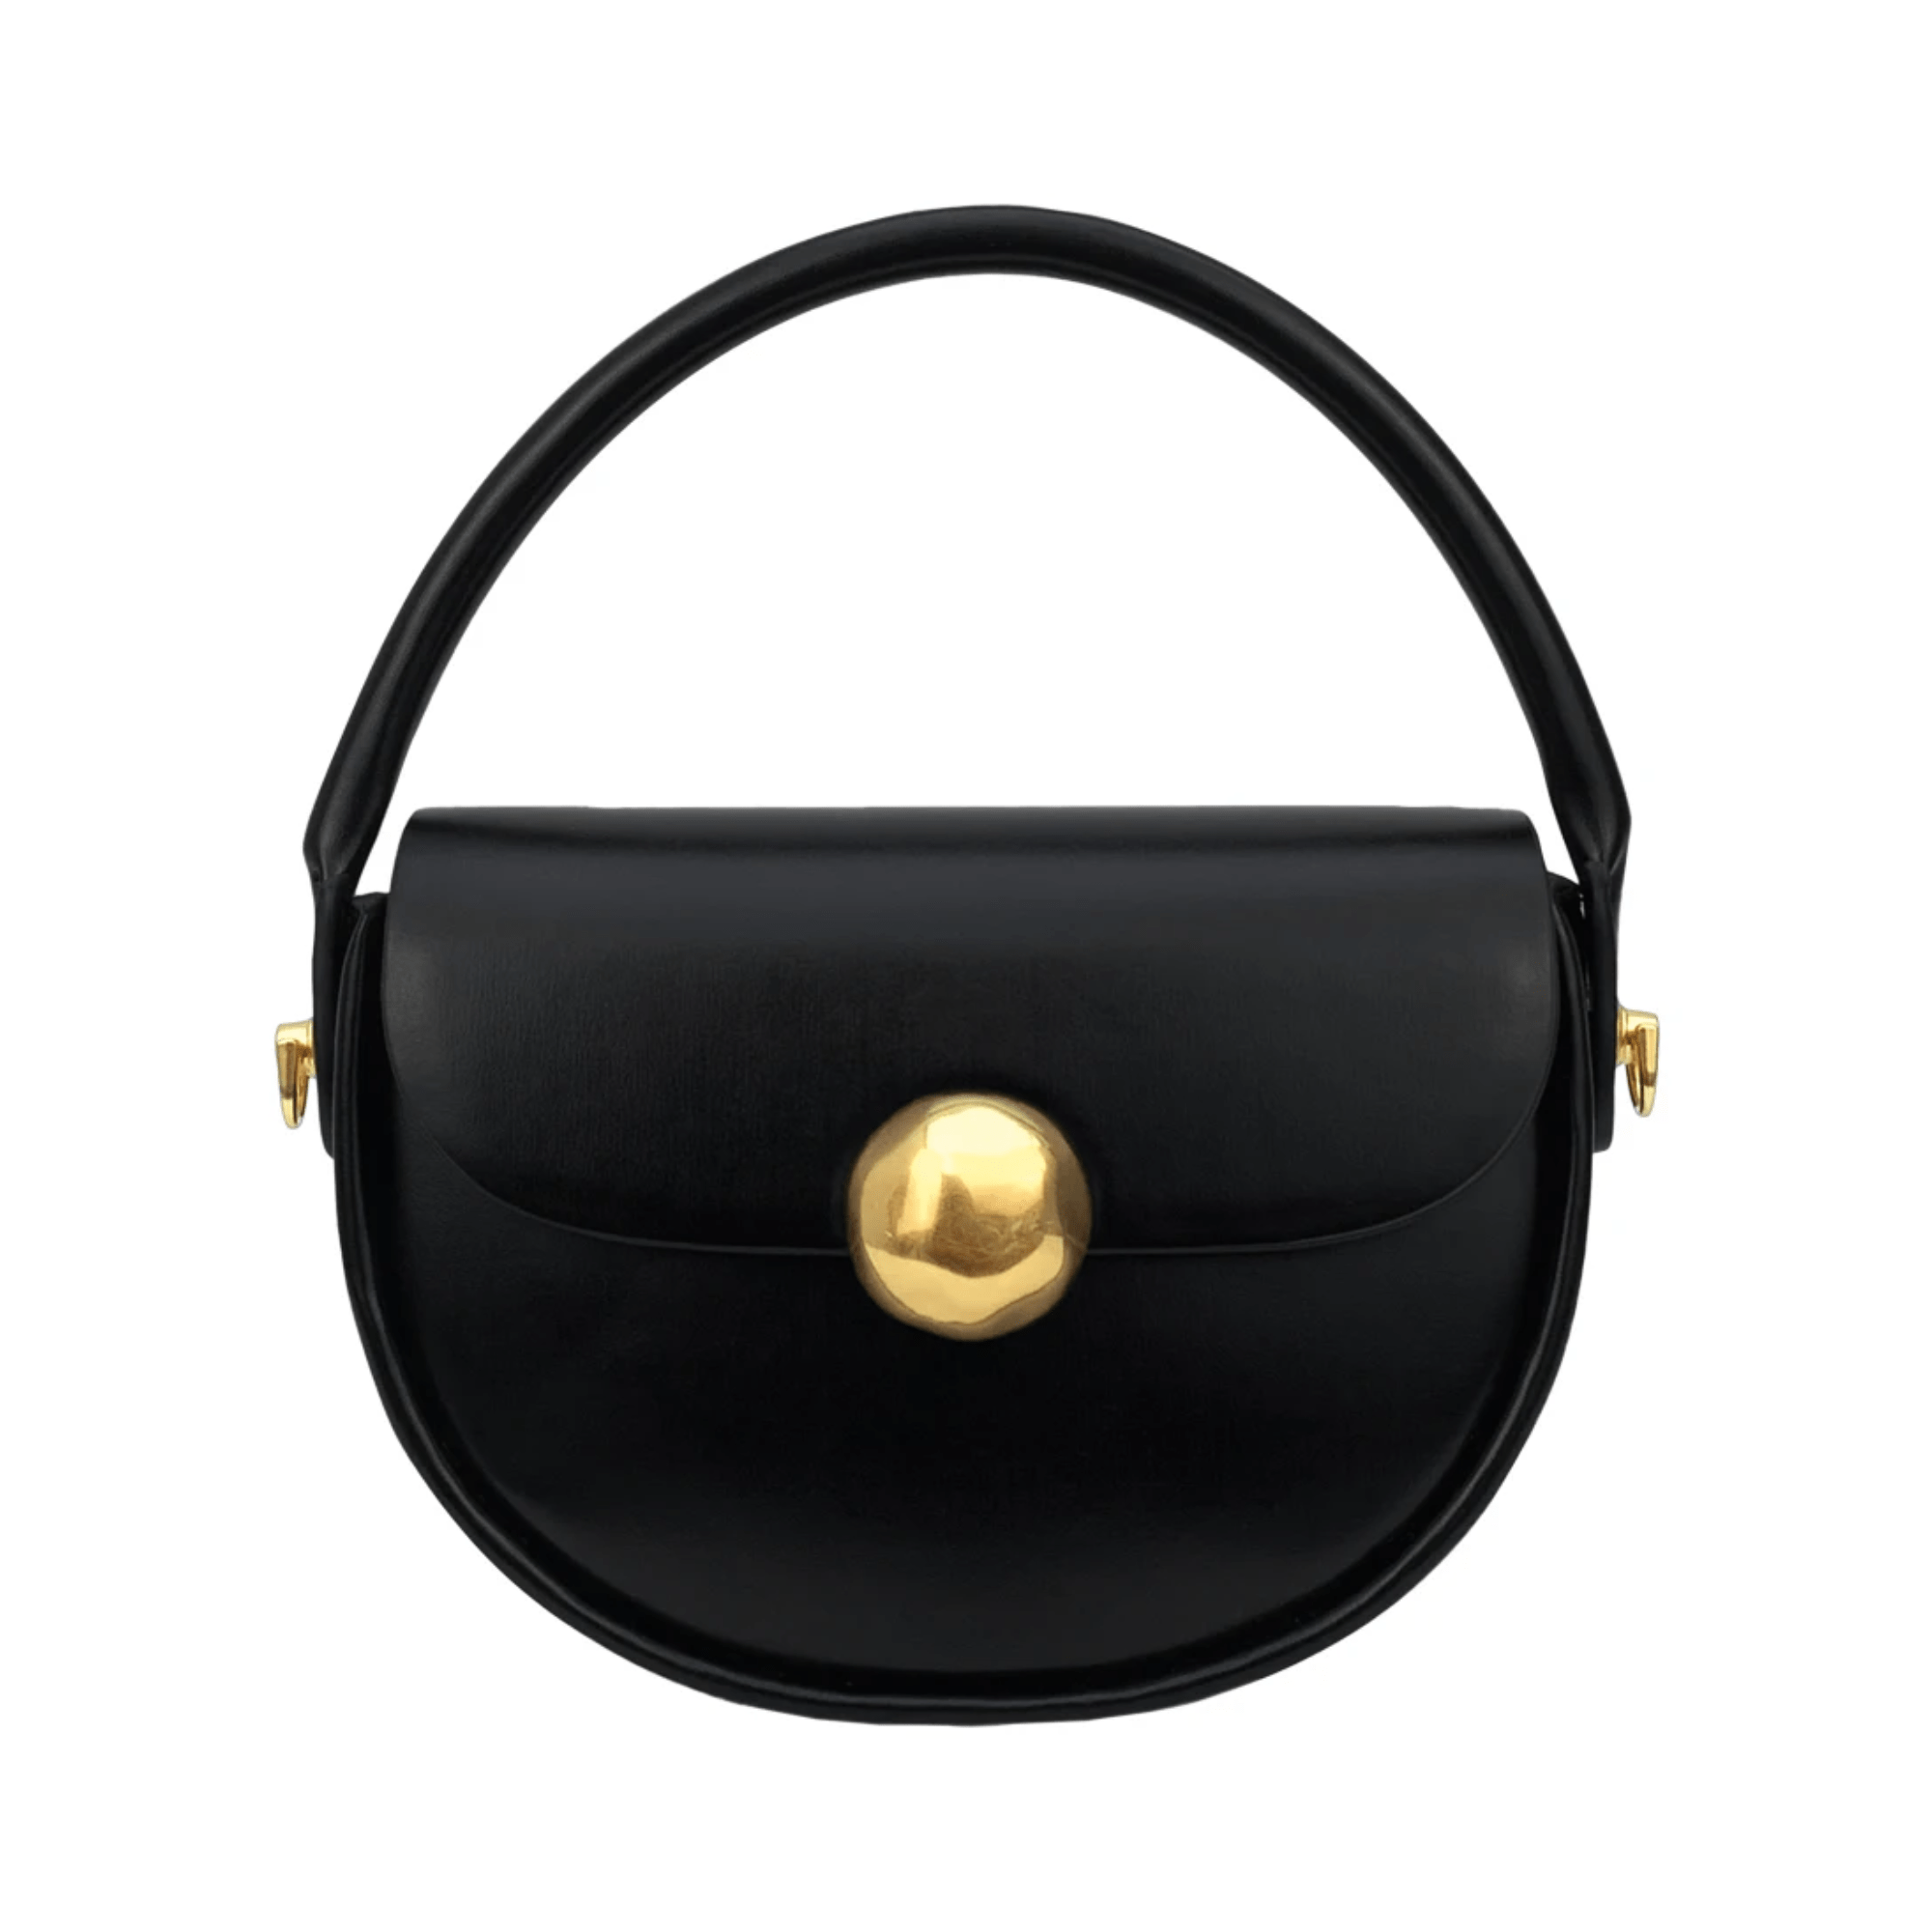 Gold Accents Flap Handbag - Kelly Obi New York